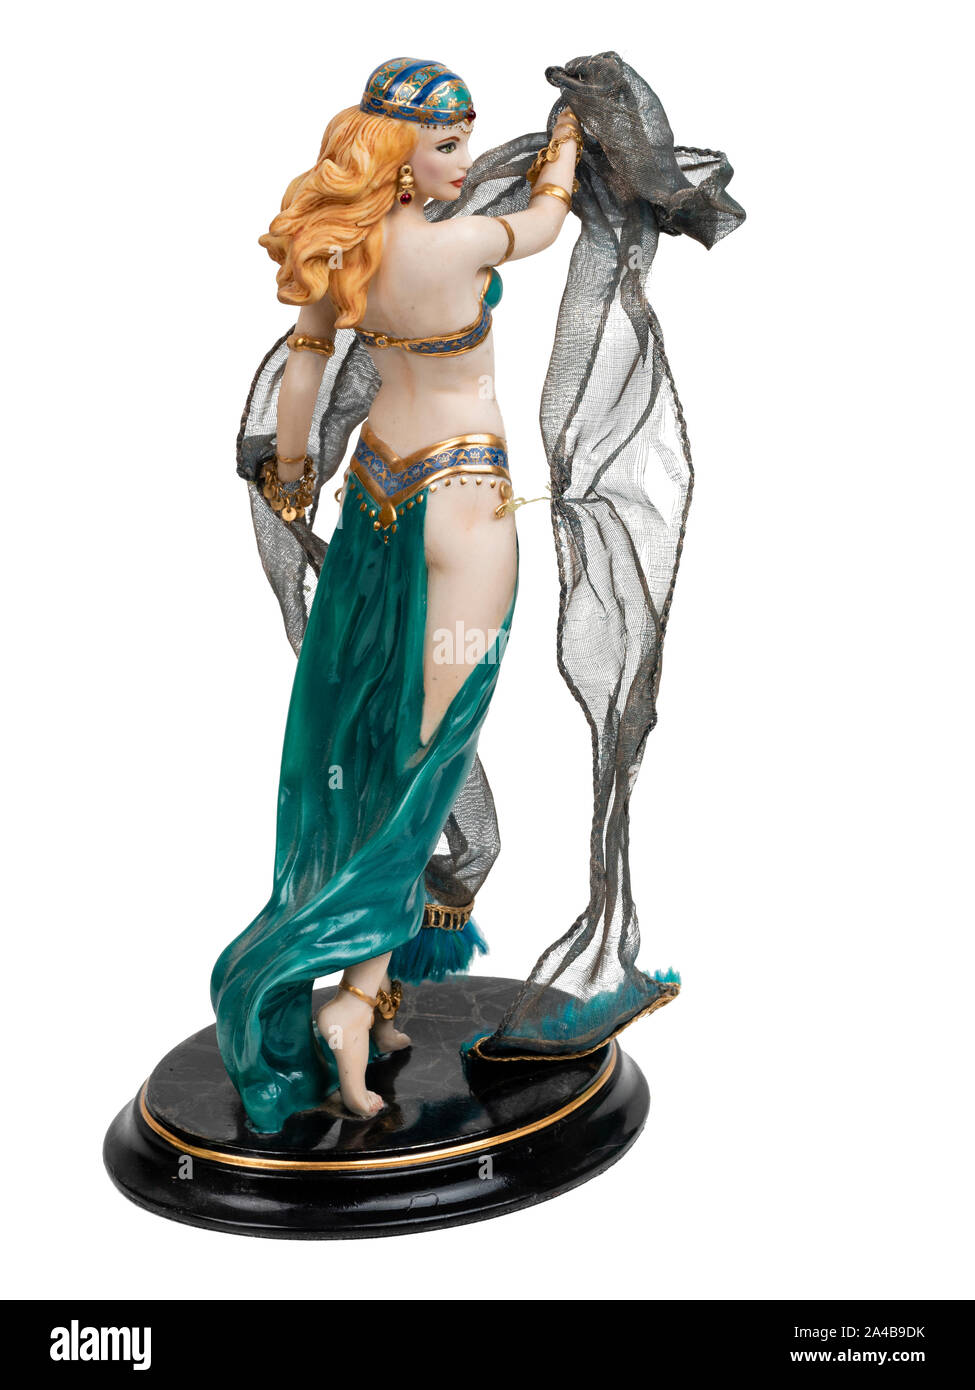 Von Hand bemalt Porzellan Modell Figur der Salome und der Tanz der sieben Schleier auf weißem Hintergrund Stockfoto